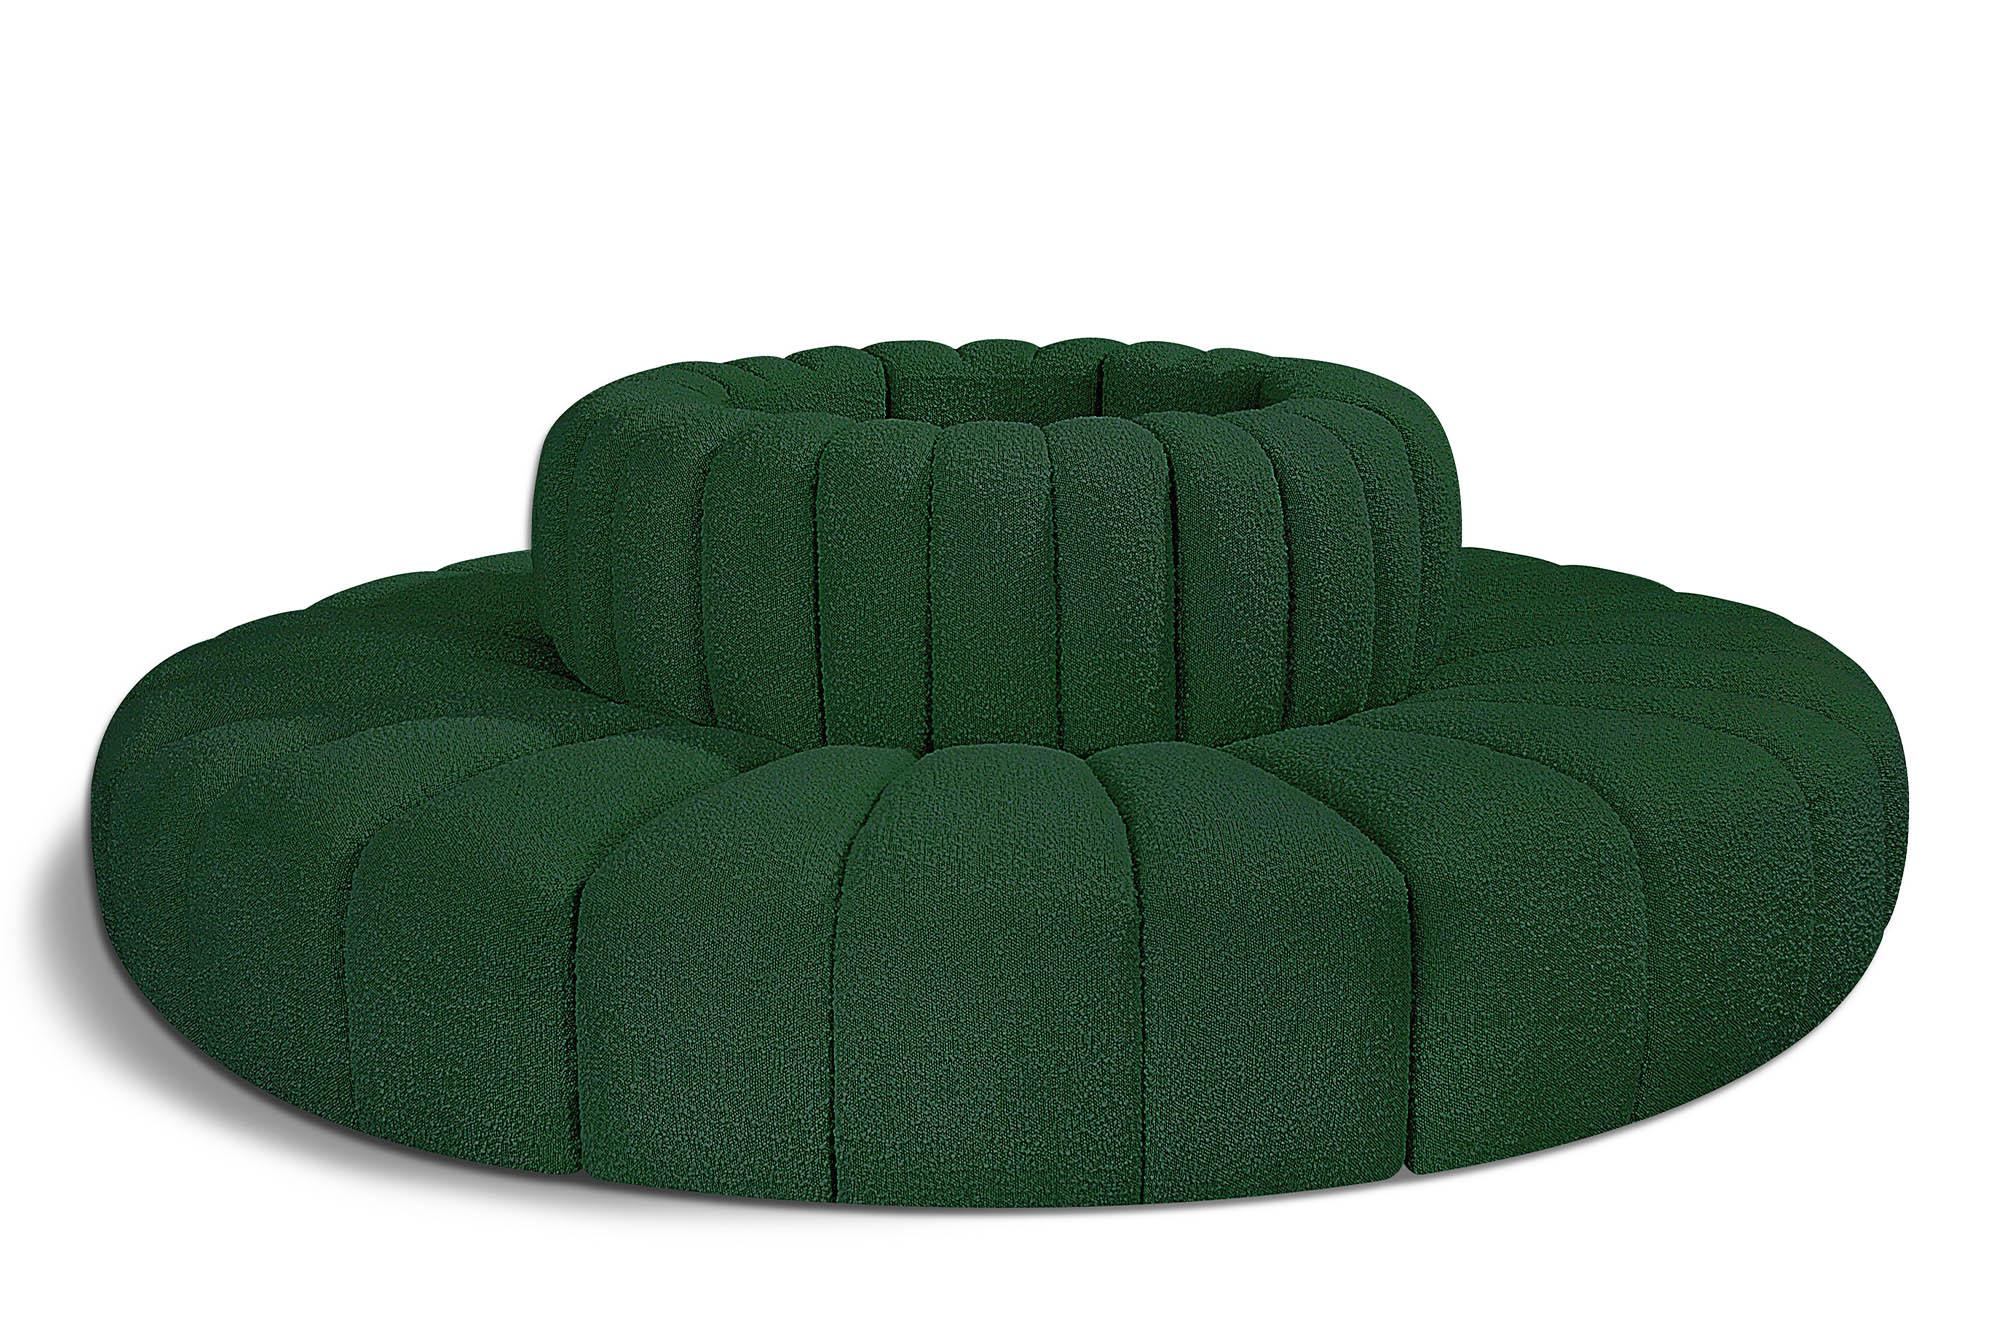 Contemporary, Modern Modular Sectional Sofa ARC 102Green-S8D 102Green-S8D in Green 